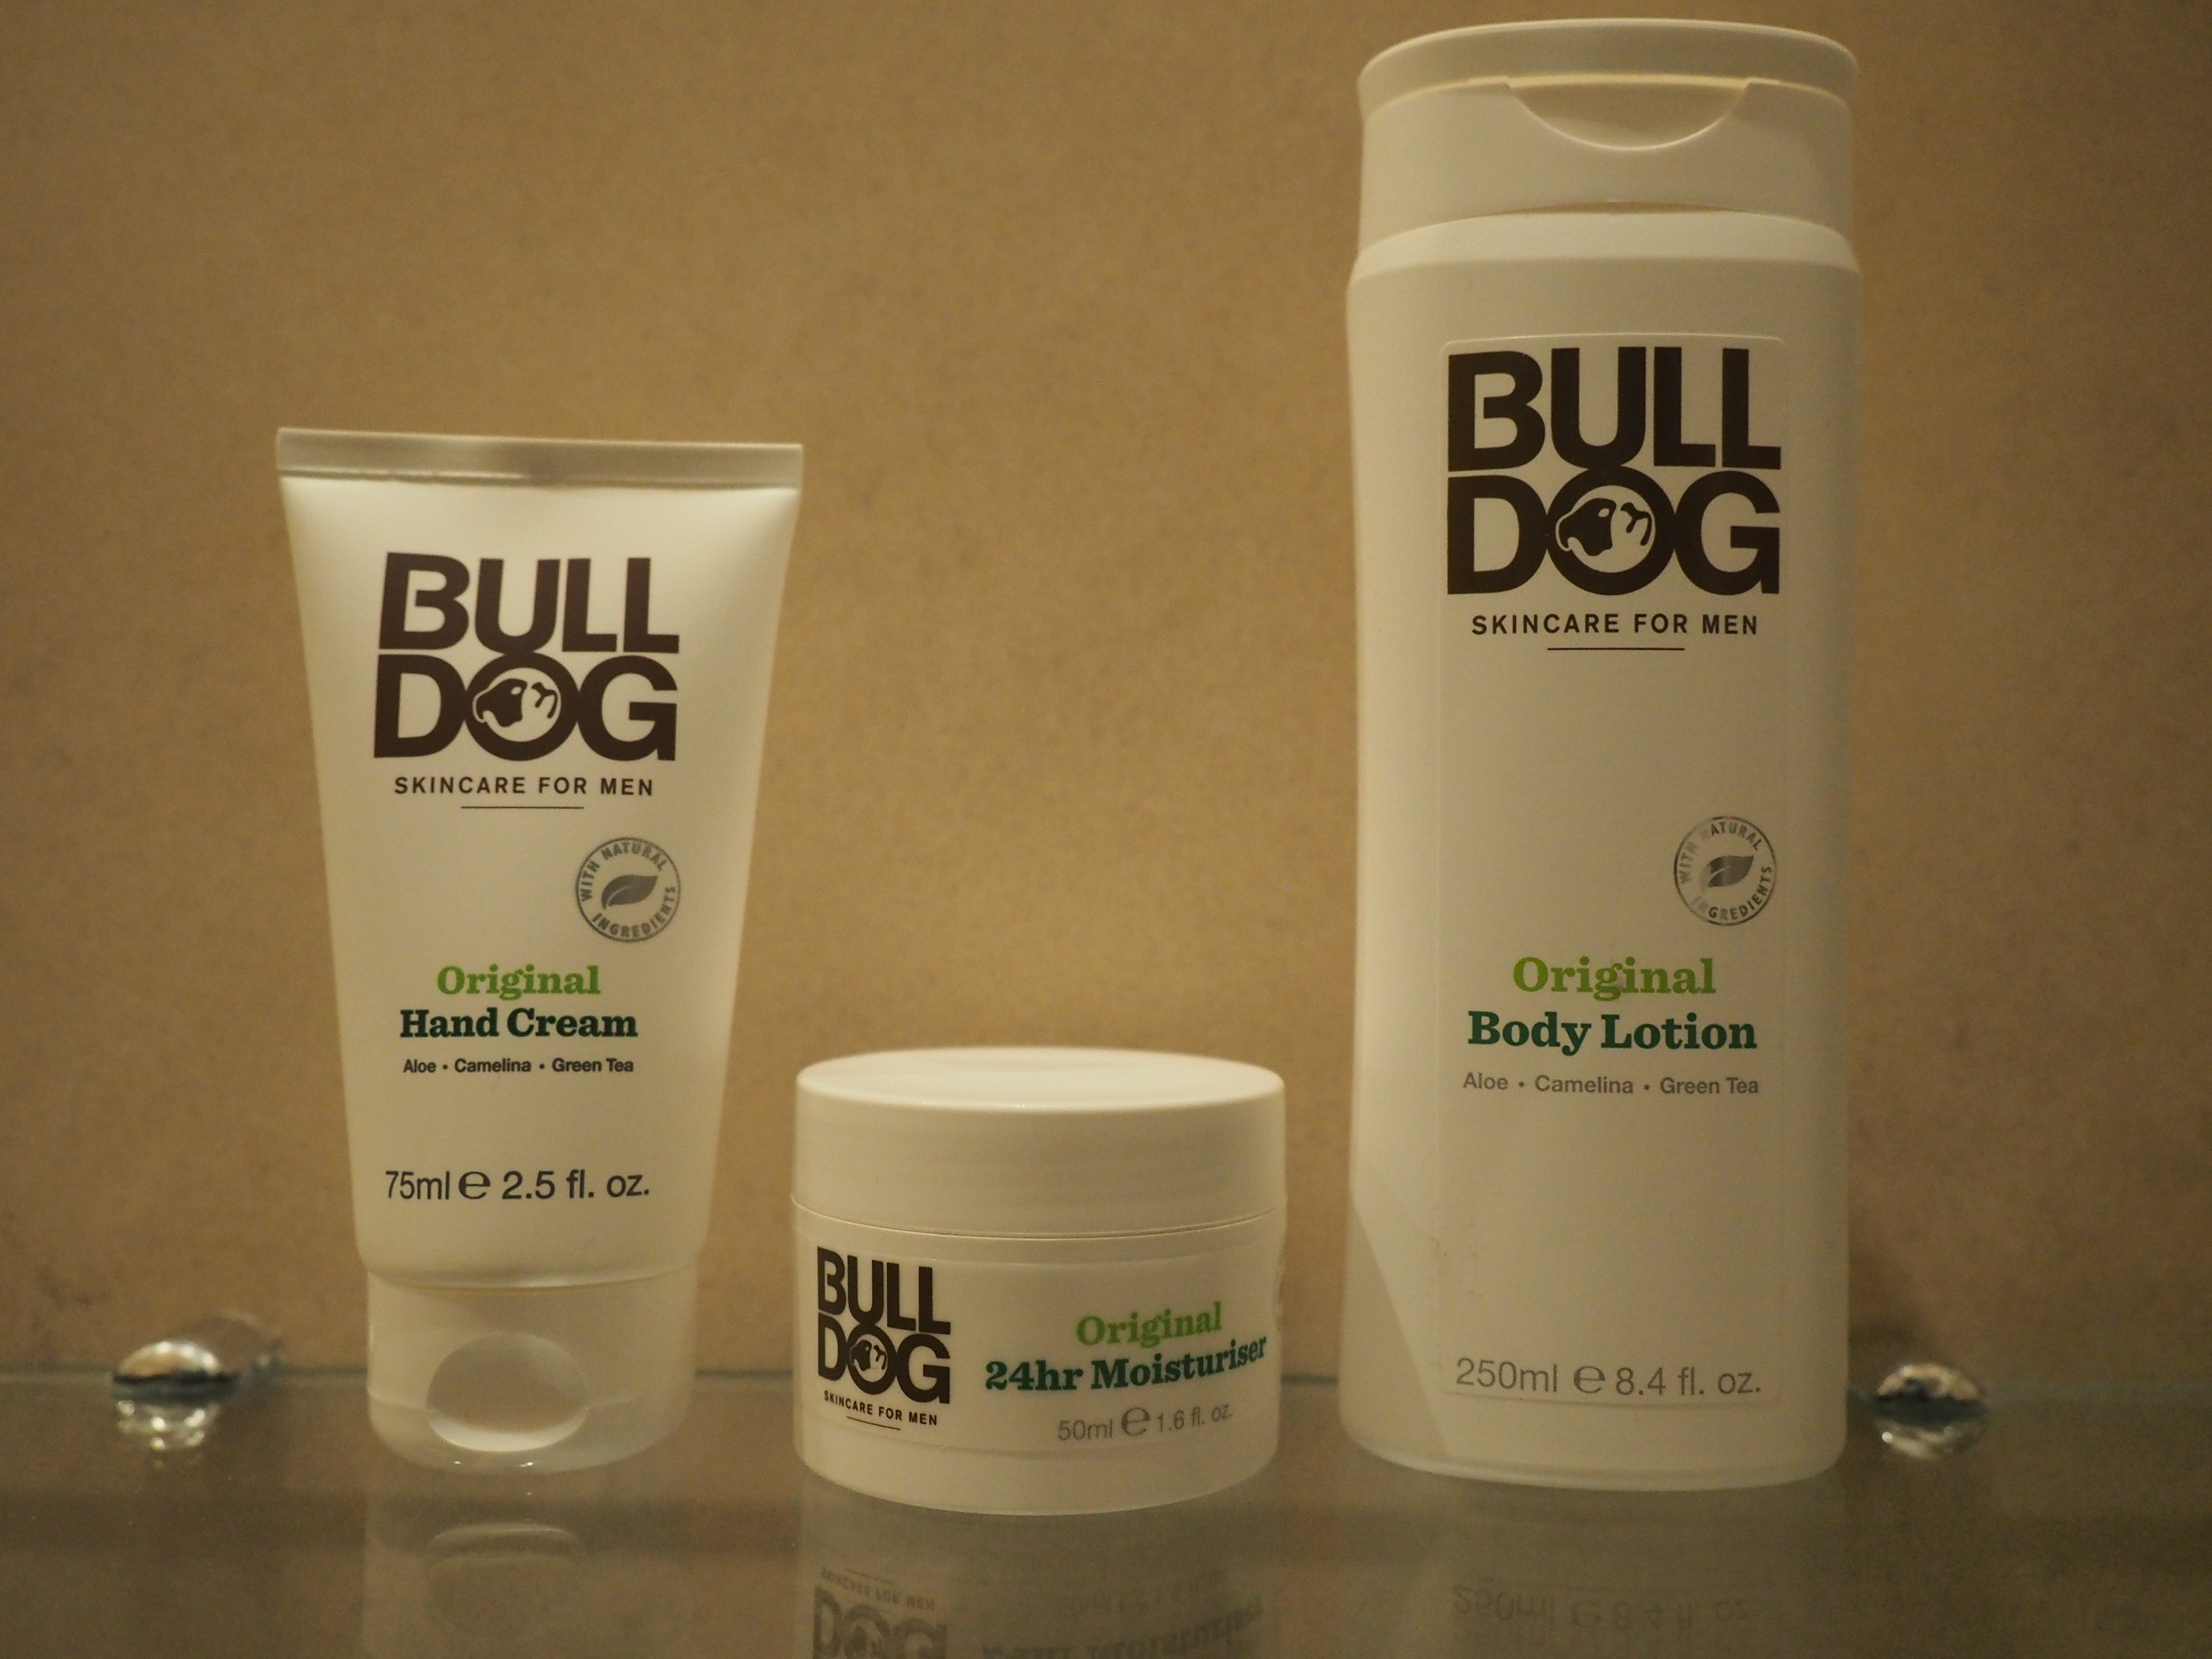 New Originals Bulldog Skincare Range is Here